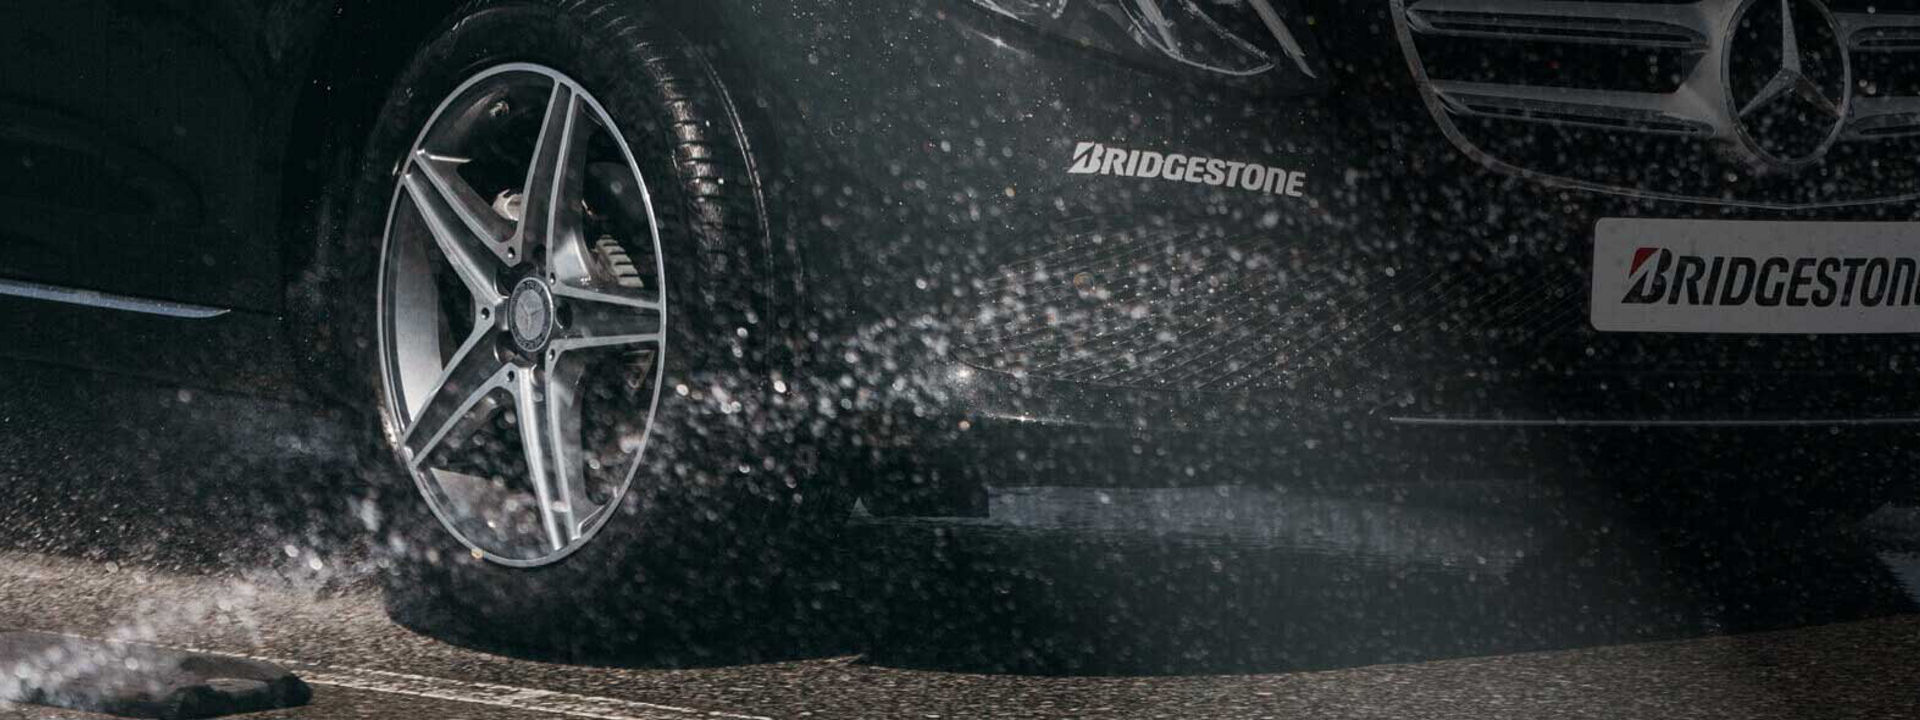 Esta imagen es un primer plano del neumático Turanza de Bridgestone durante la conducción sobre mojado